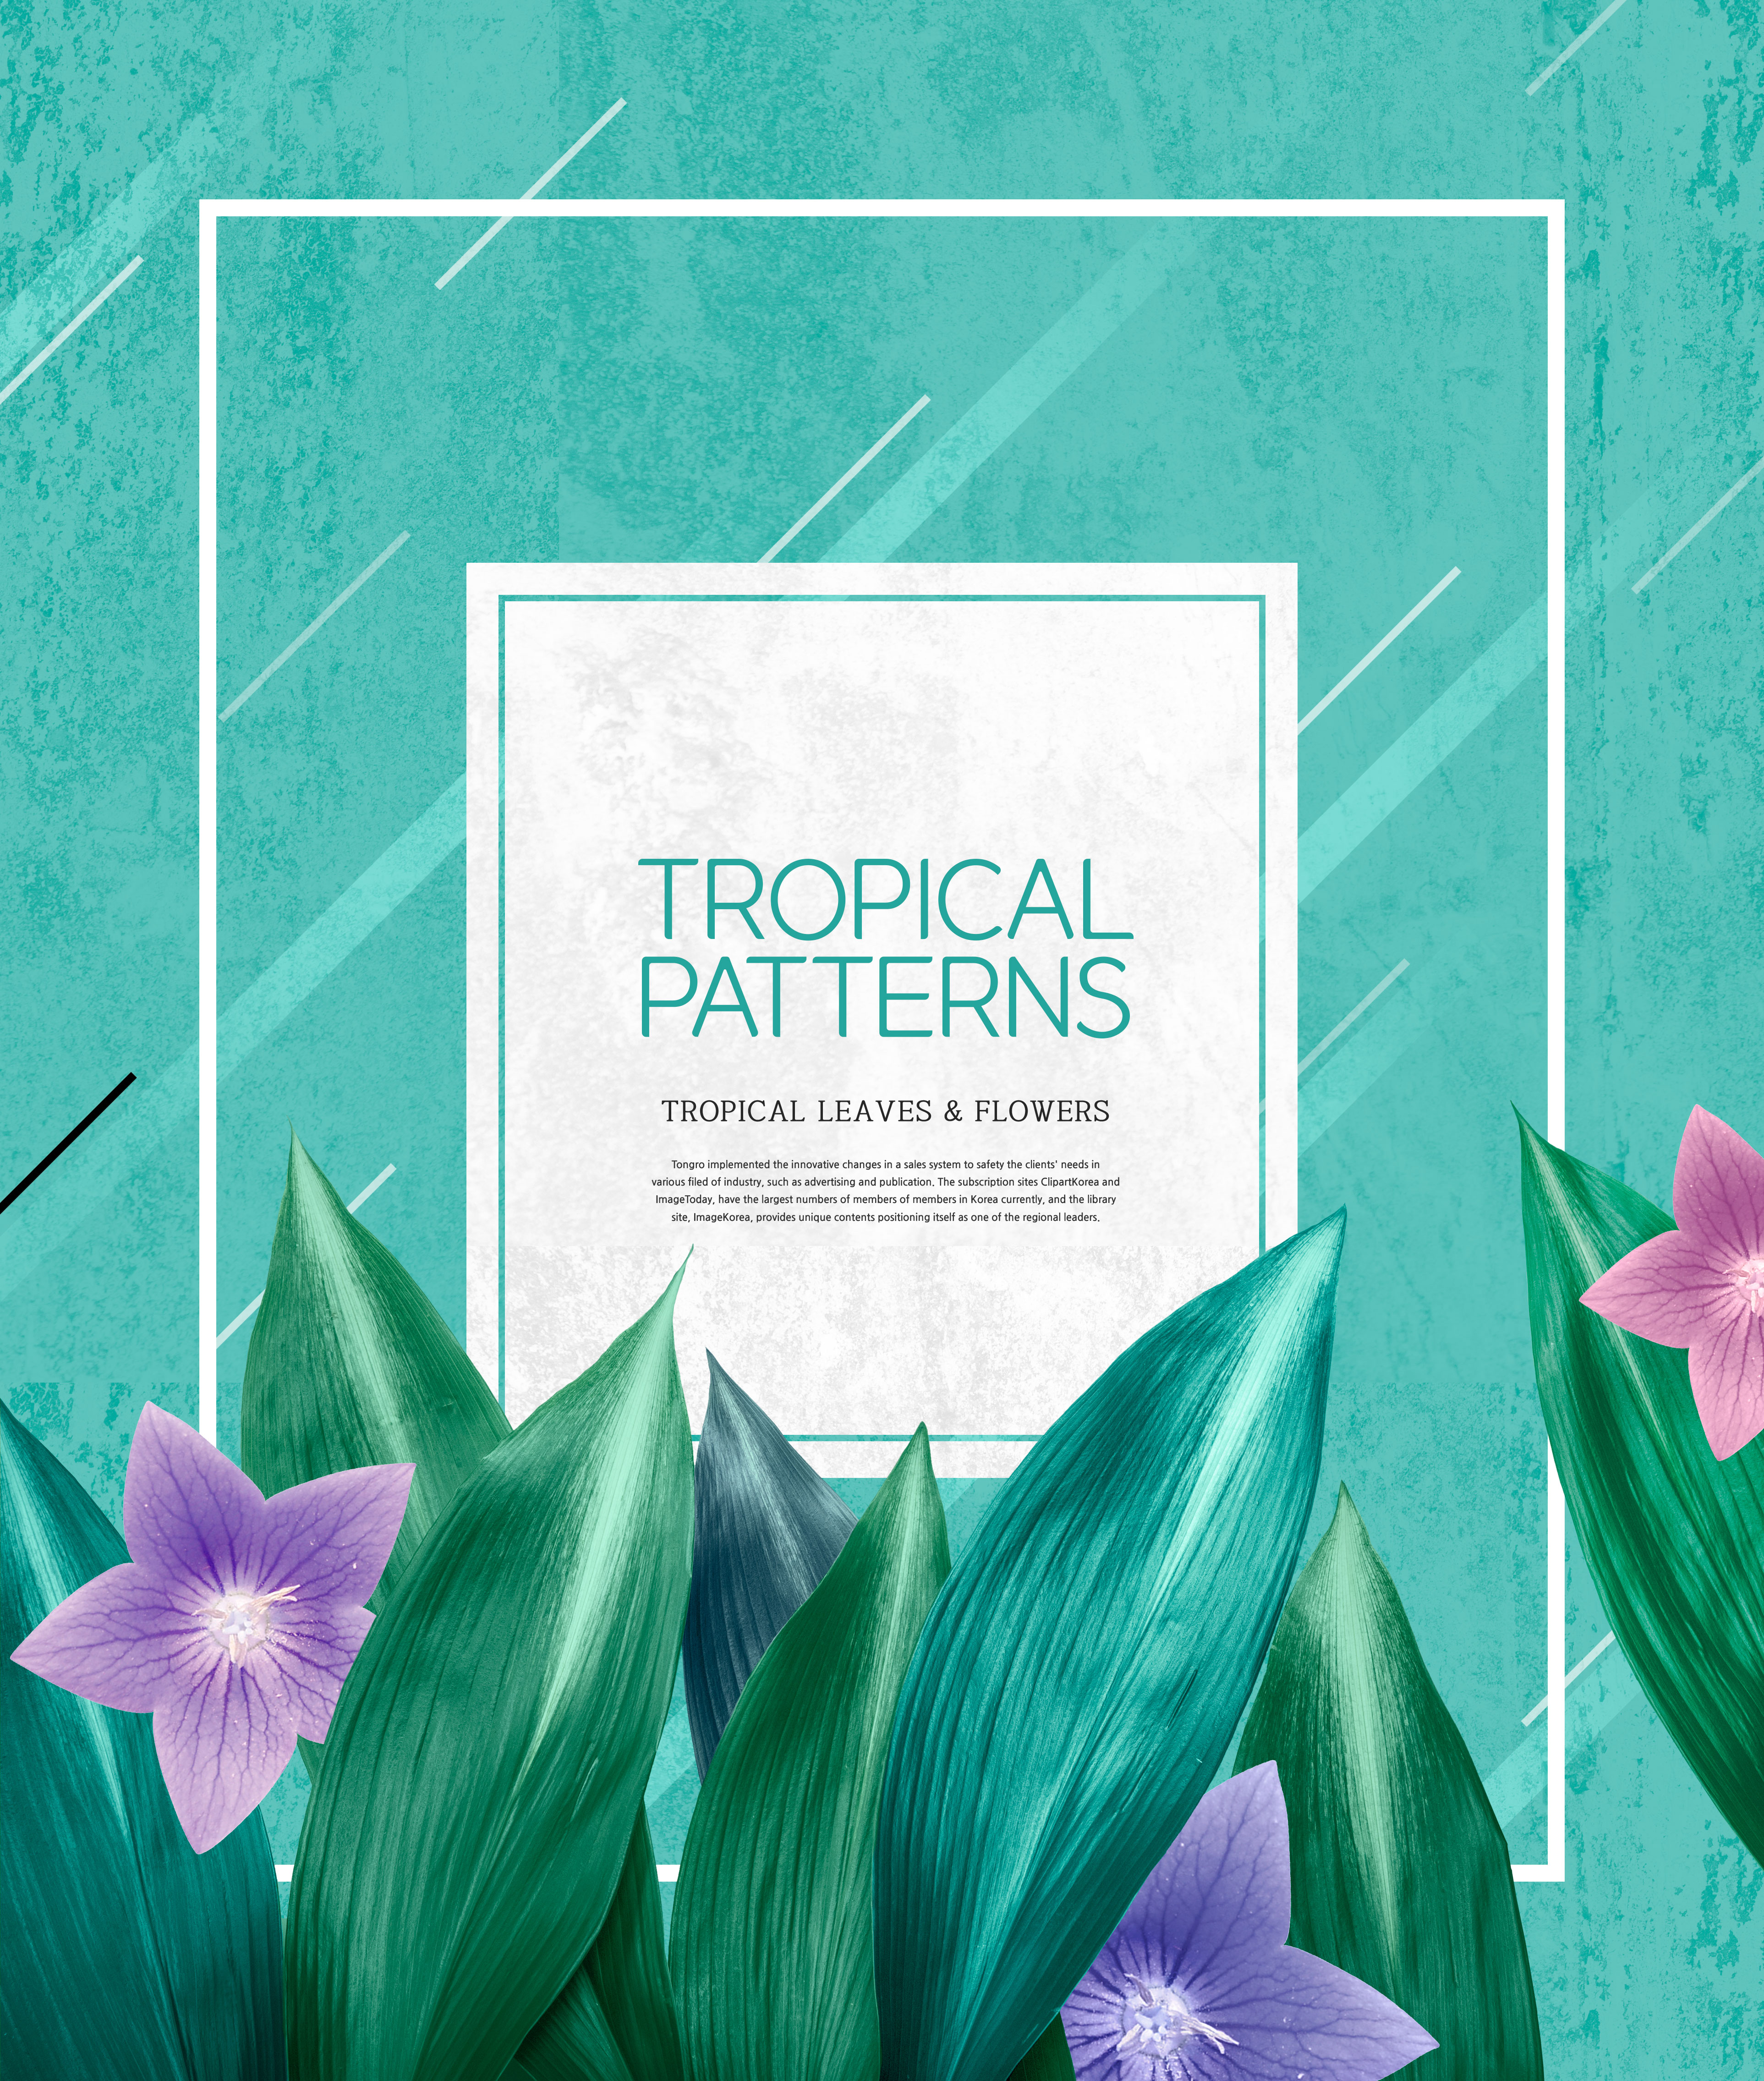 热带植物叶子&花卉图案海报设计素材插图(5)